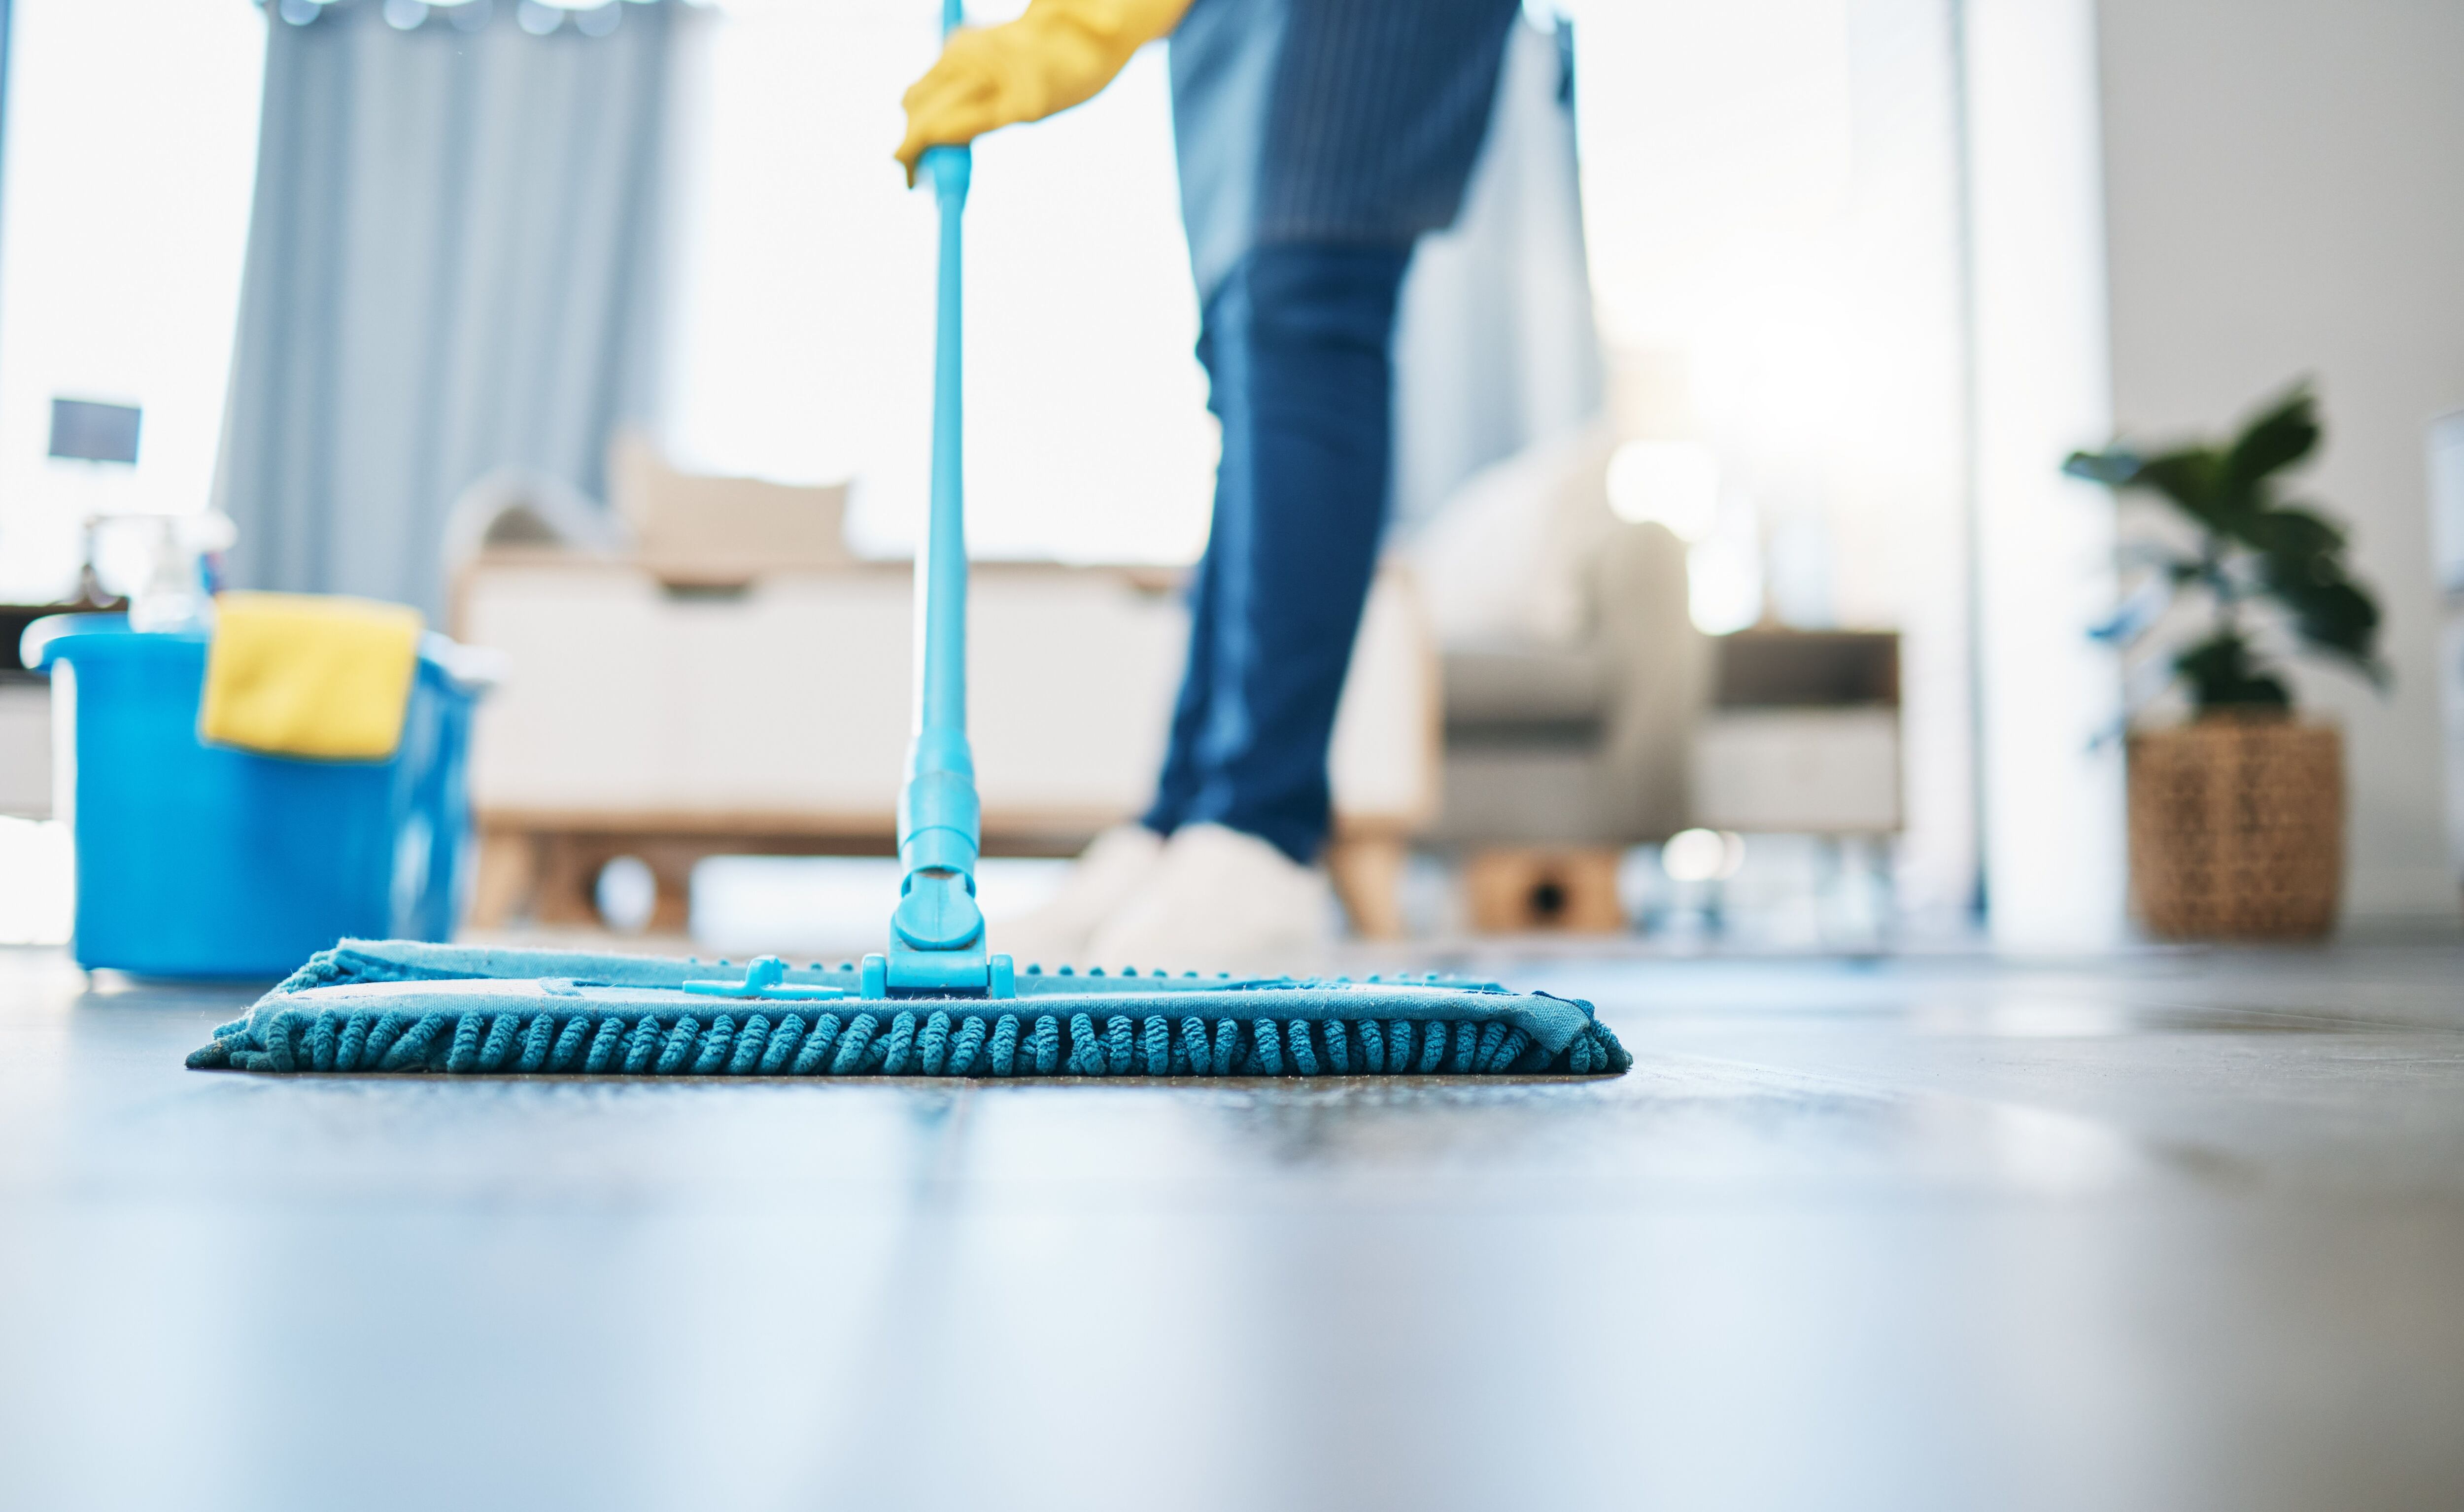 Limpieza del suelo con productos químicos (Shutterstock)